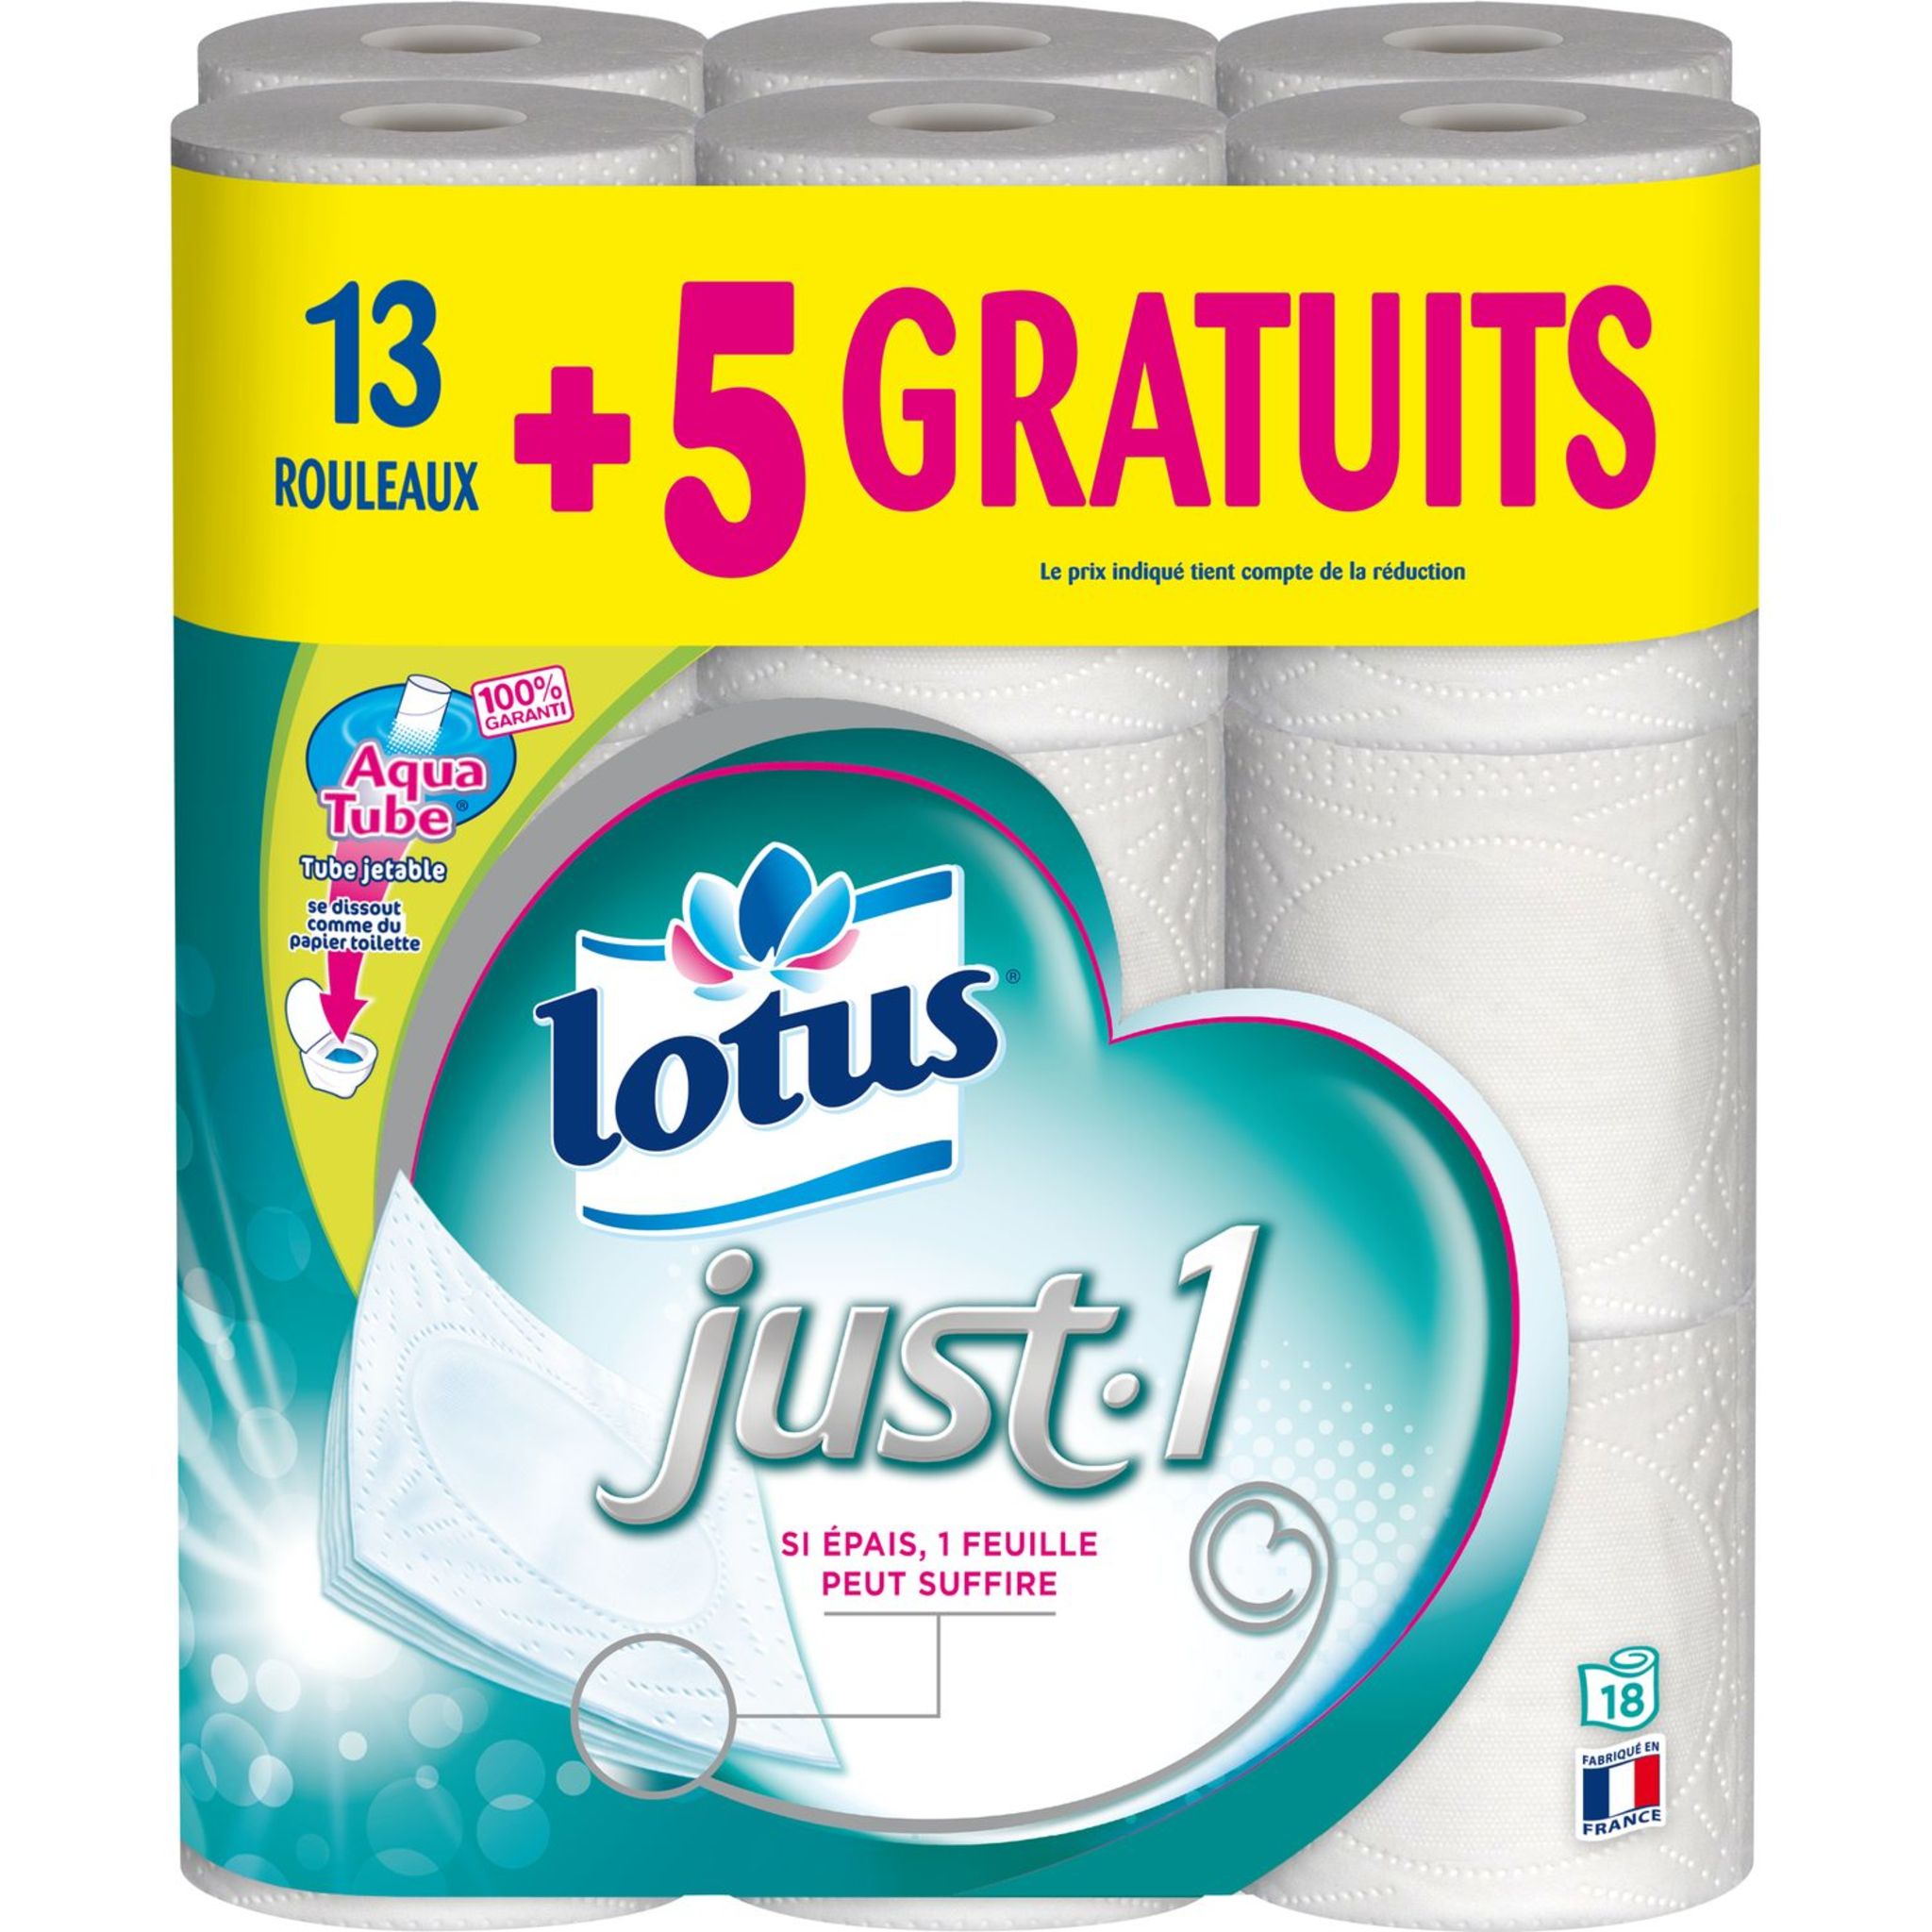 Lotus - Papier toilette confort xxl (6 pièces)